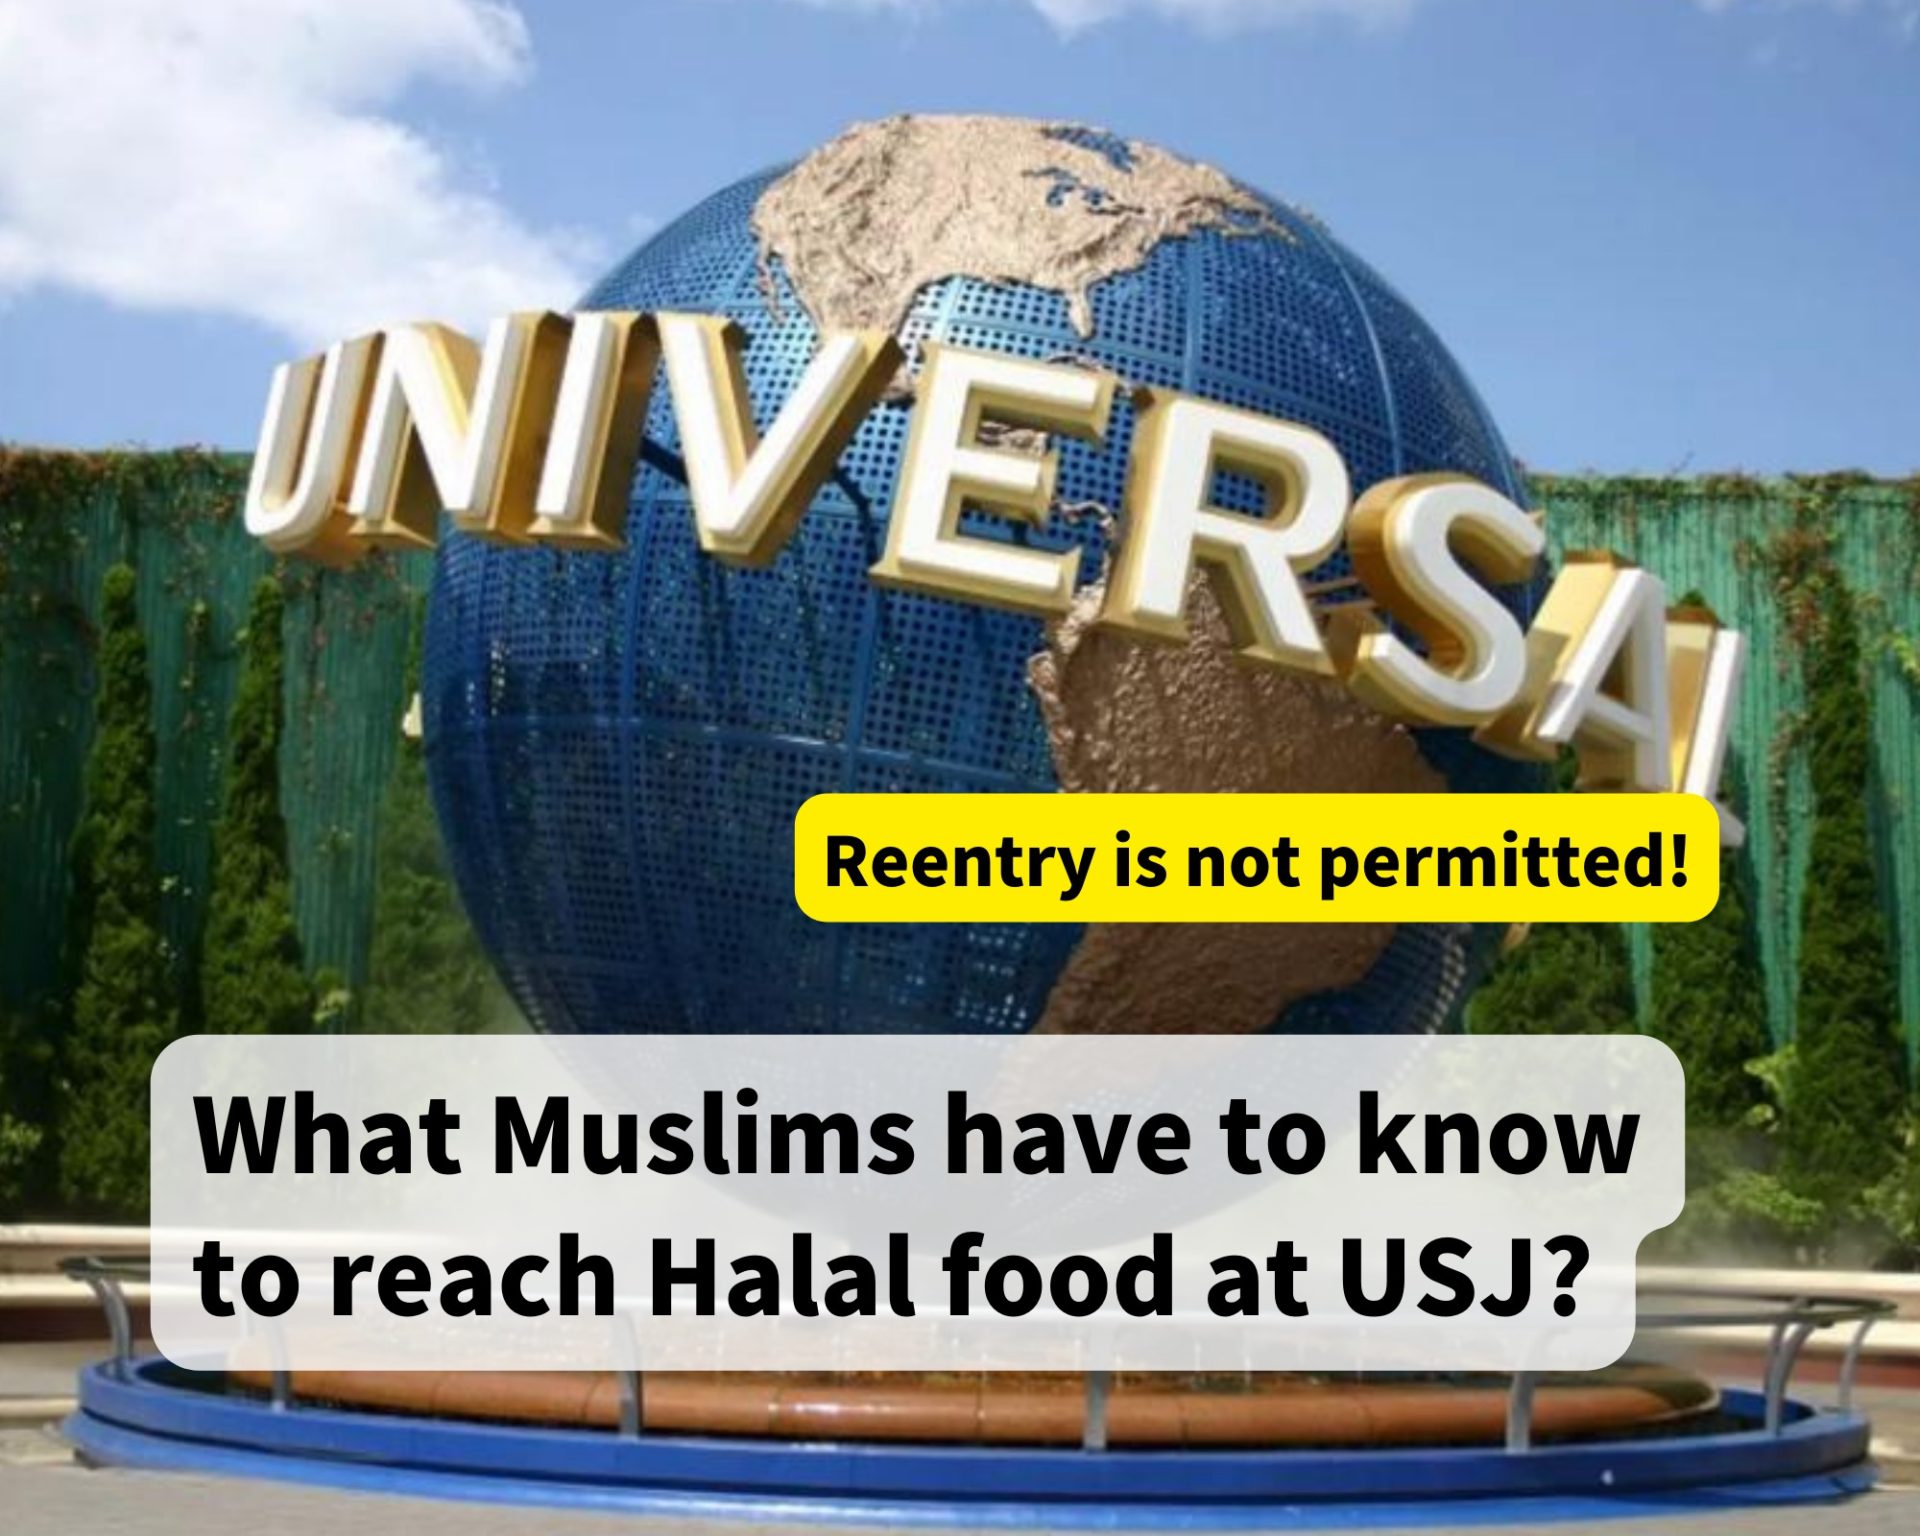 USJ Halal food